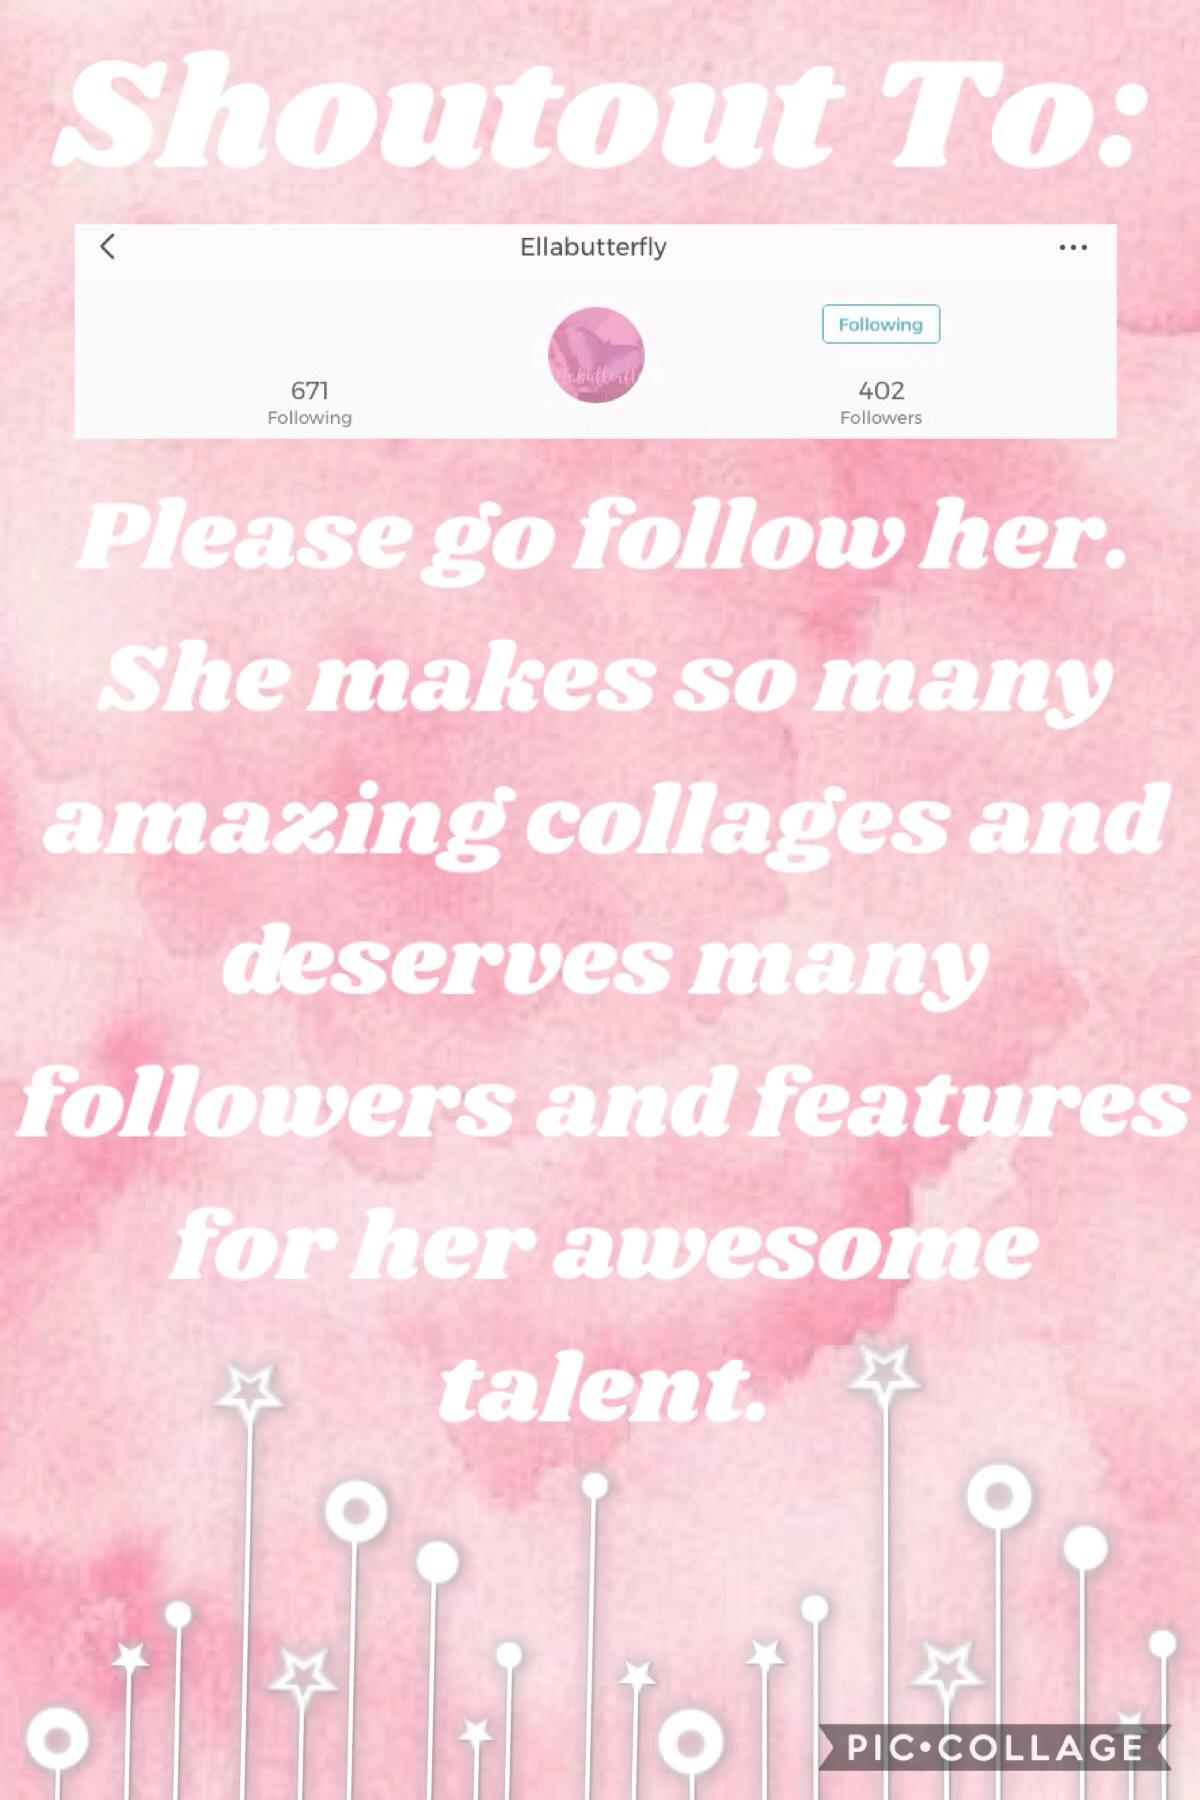 Yay!! Go follow her.